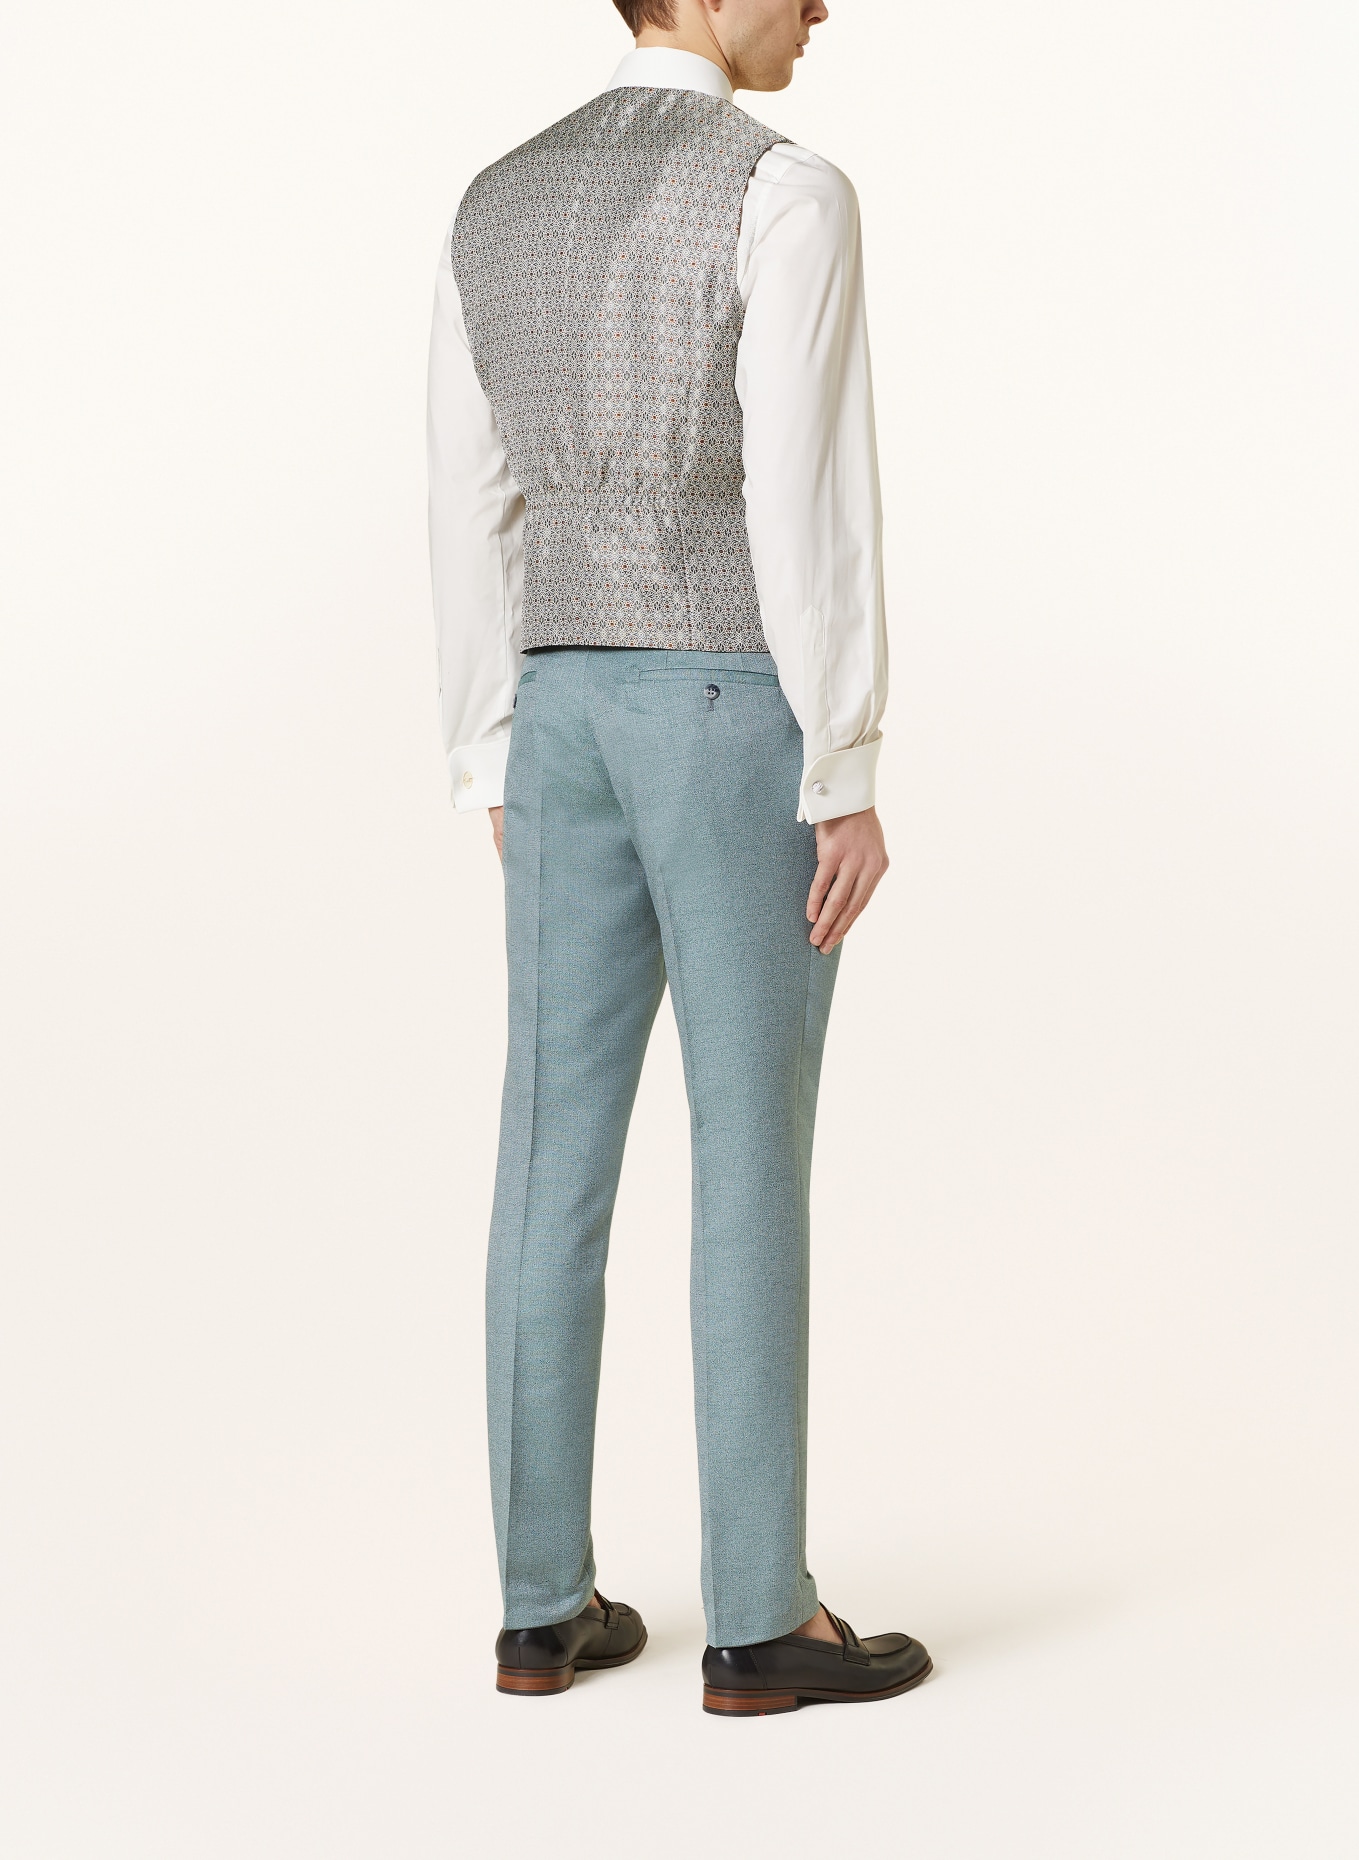 WILVORST Vest extra slim fit, Color: 045 grün (Image 3)